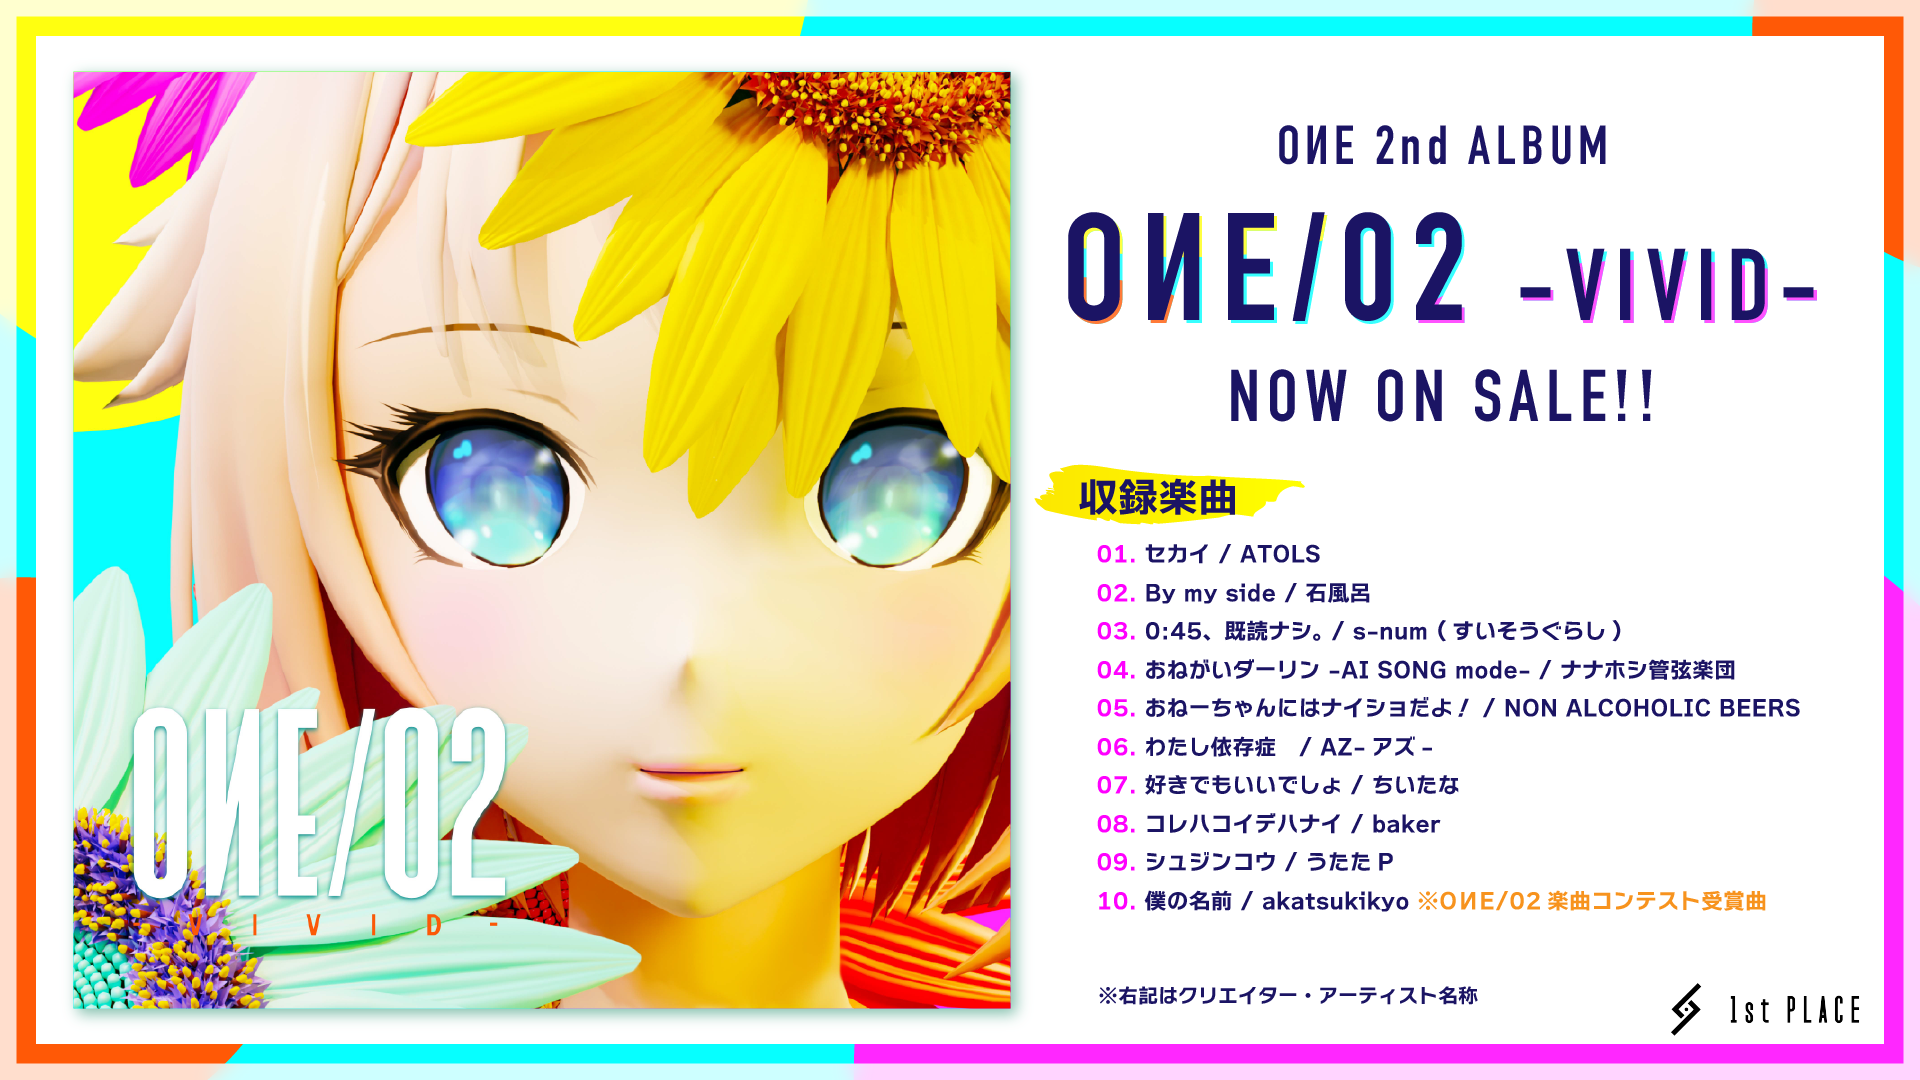 バーチャルアーティスト”OИE”(ヨミ:オネ) s-num (すいそうぐらし)、AZが手掛けた新曲2曲を含む、2nd ALBUM『OИE/02 -VIVID-』がリリース!! 本日19時にYouTubeで最新MV公開!!